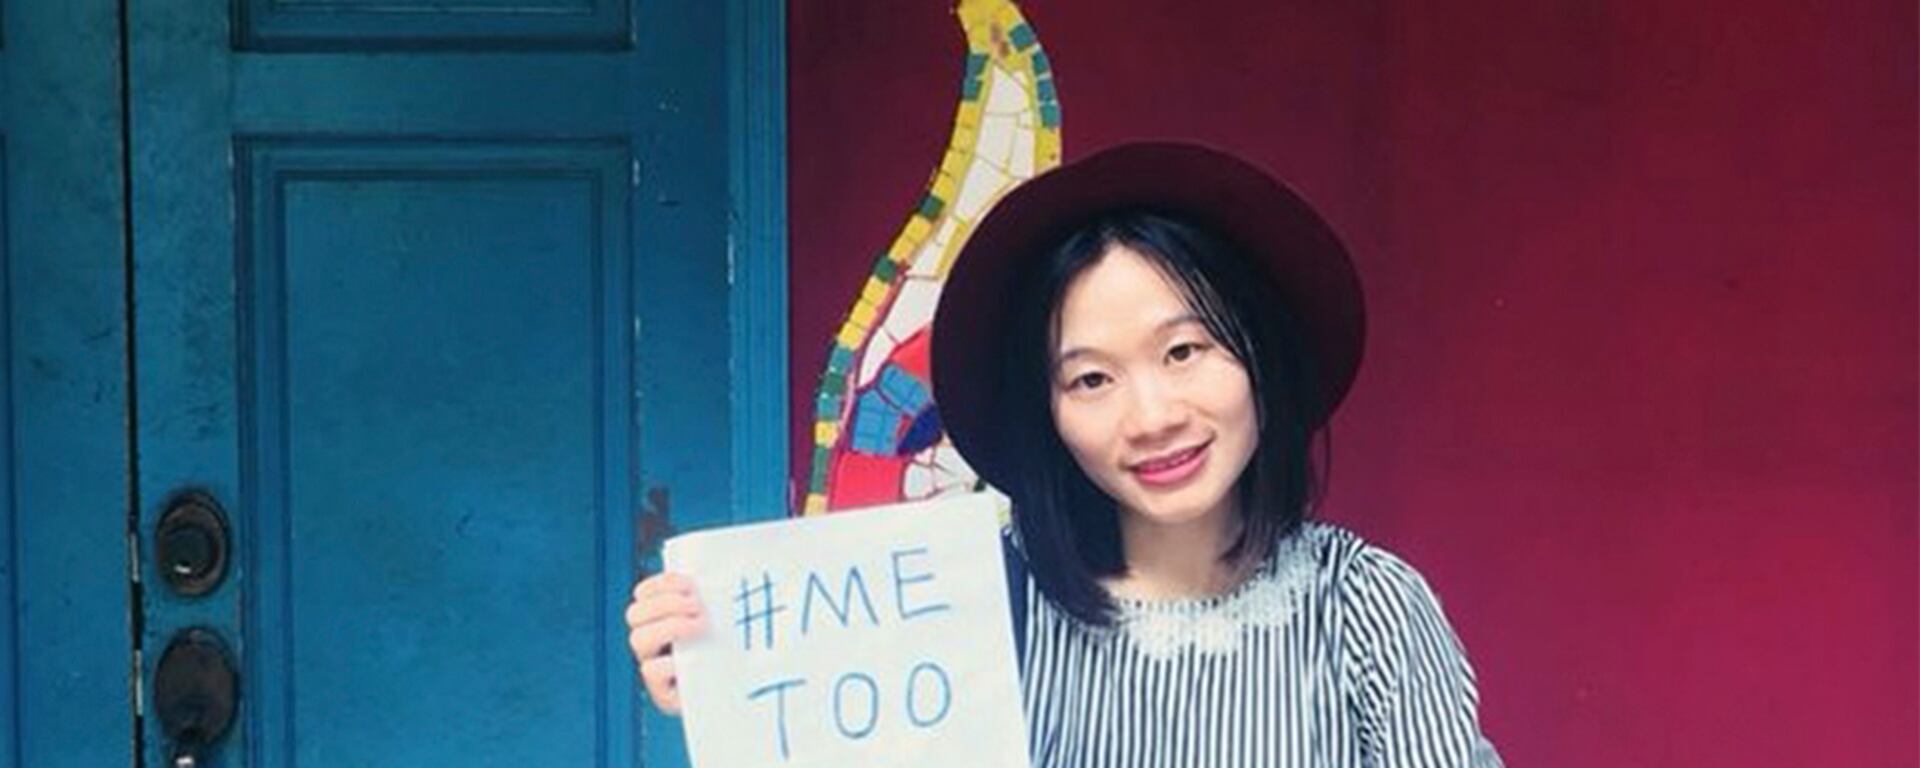 Condenas radicales en China: Huang Xueqin, periodista fundadora del #MeToo chino, es sentenciada a prisión